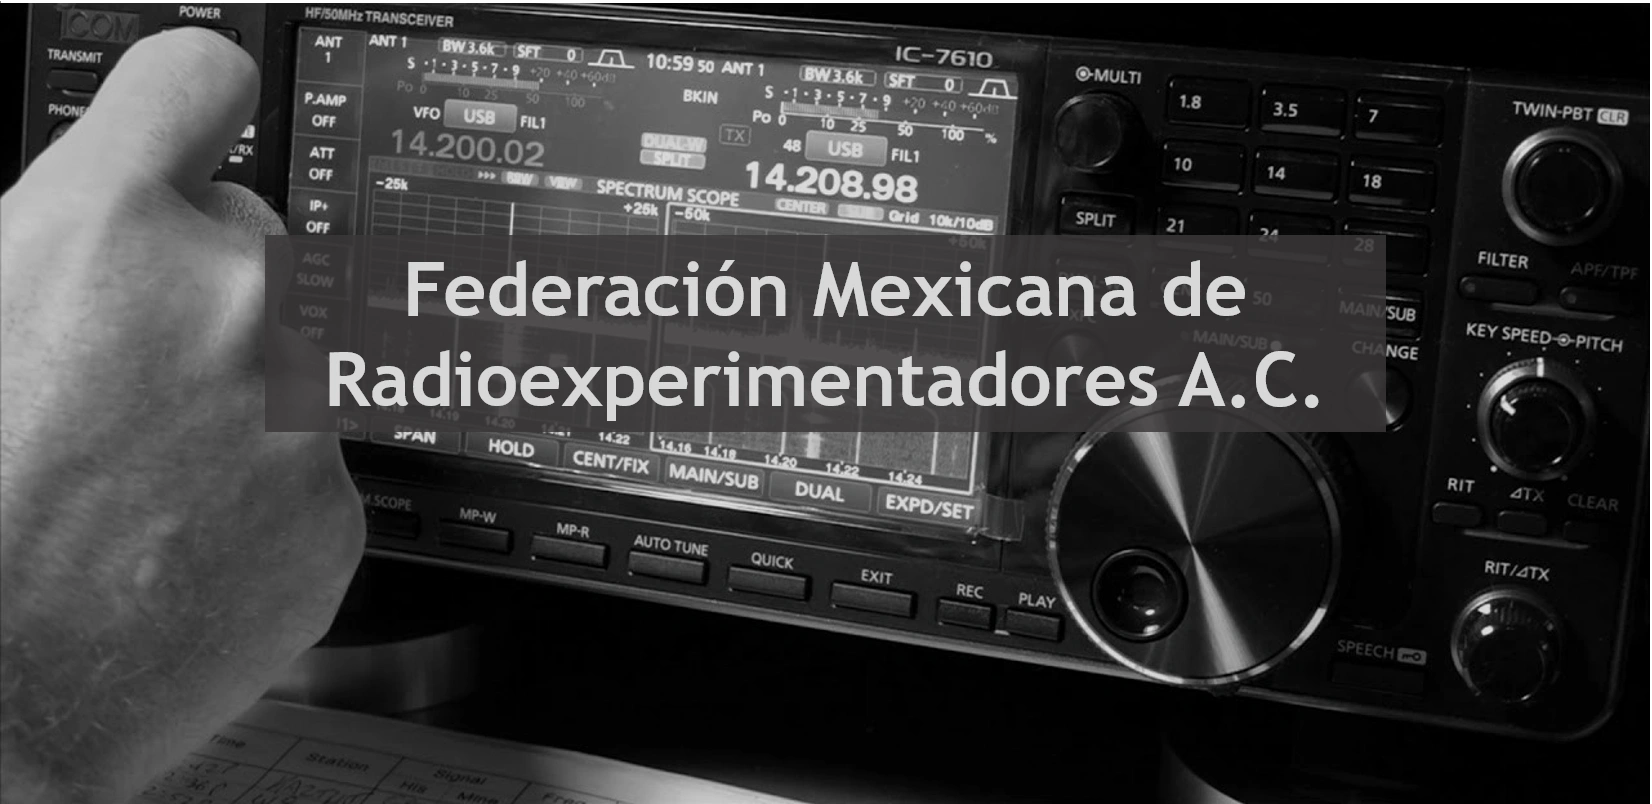 Federación Mexicana de Radioexperimentadores A.C